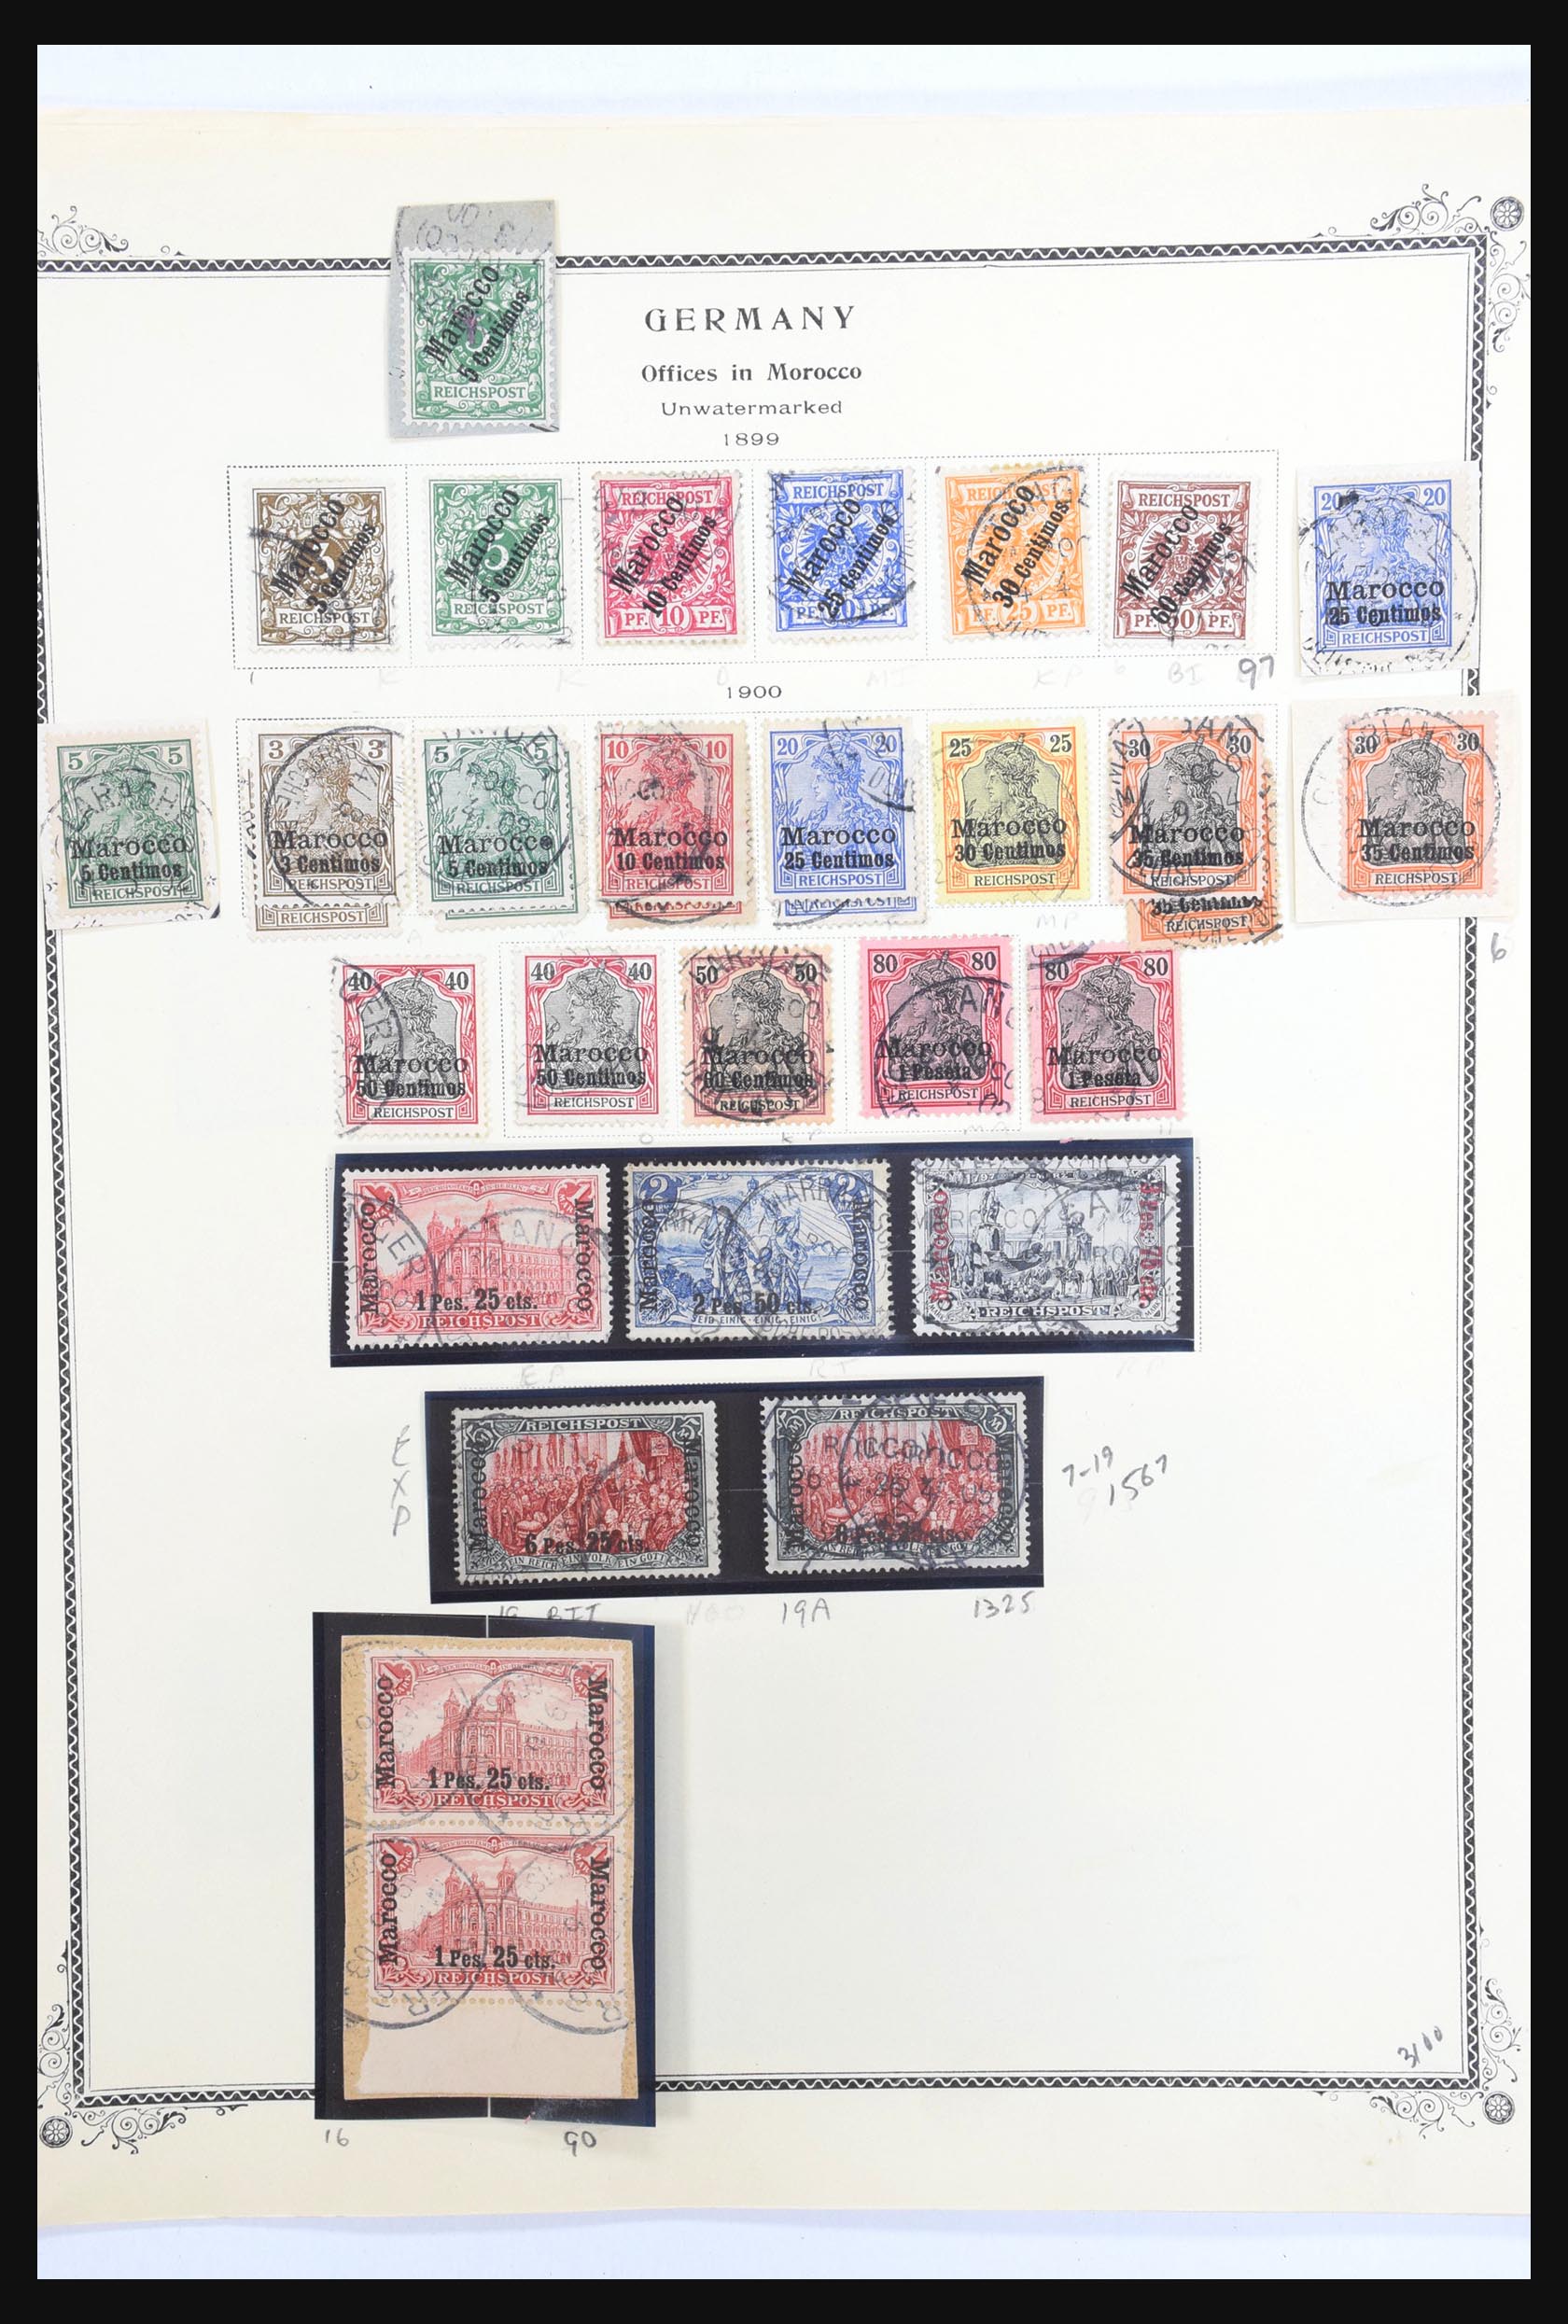 31300 448 - 31300 Duitsland superverzameling 1849-1990.